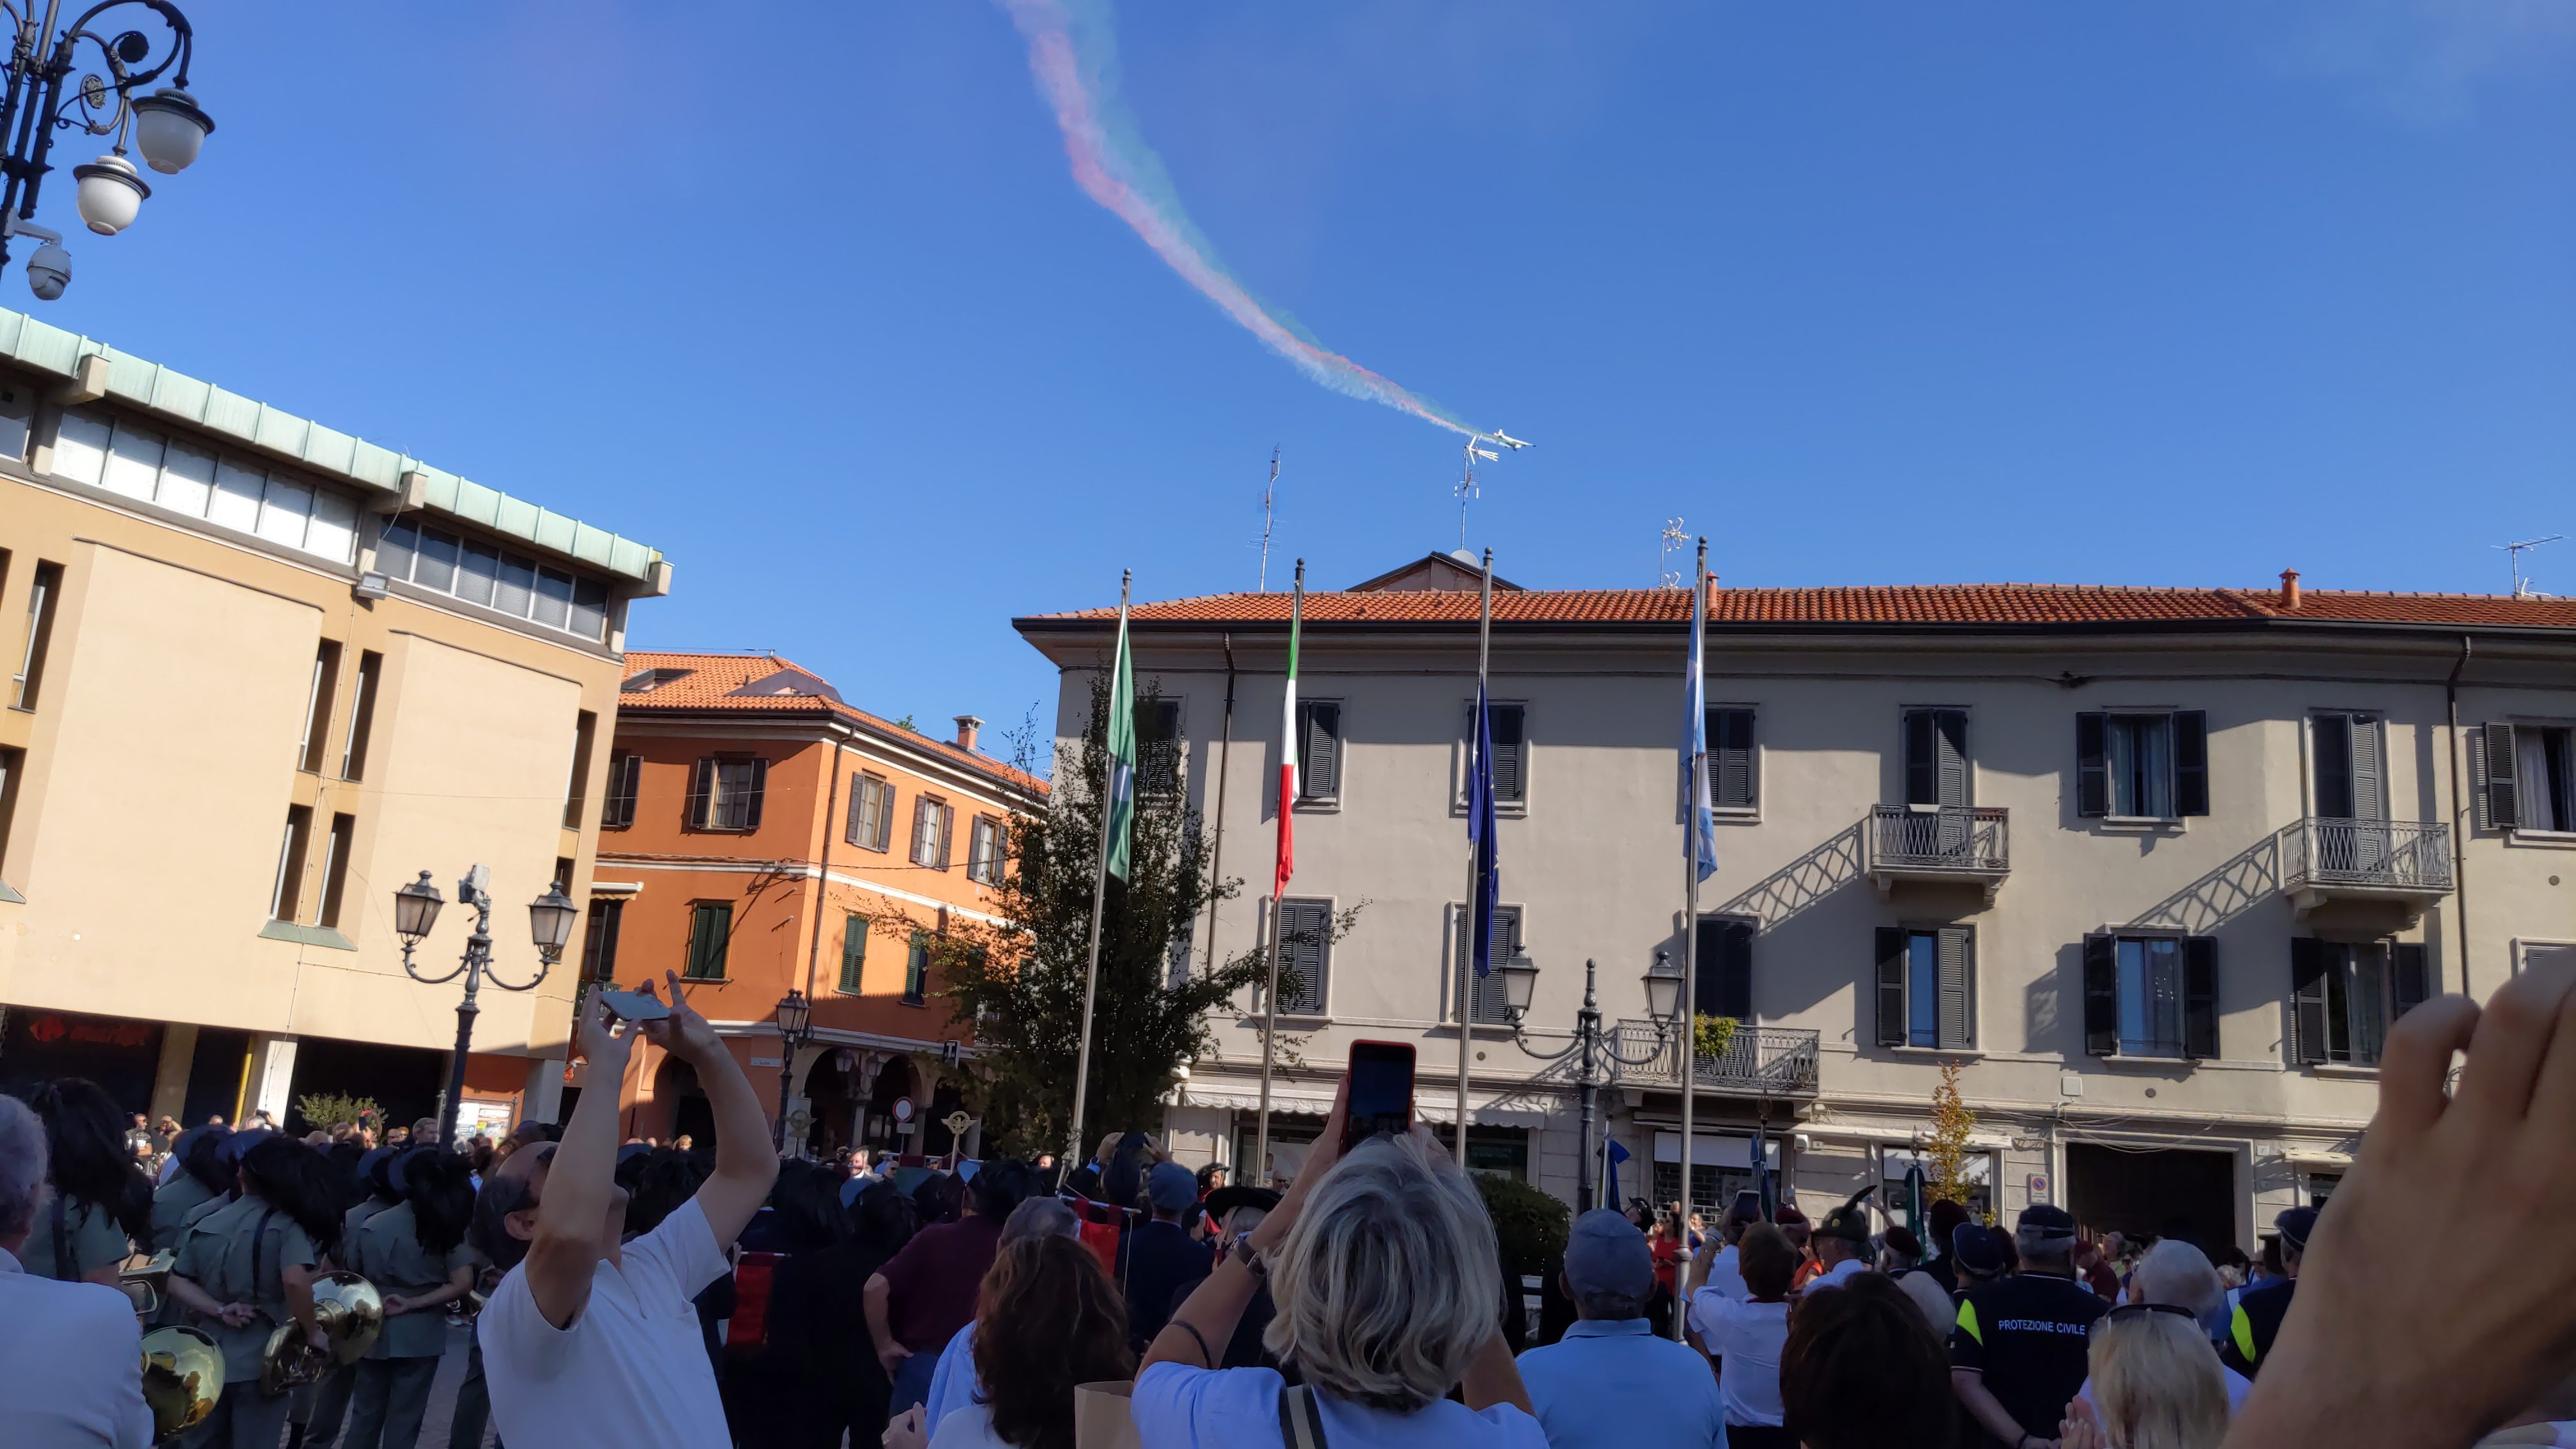 Saronno, dalla Fanfara alla scia tricolore in cielo: oggi raduno bersaglieri in diretta (foto e video)